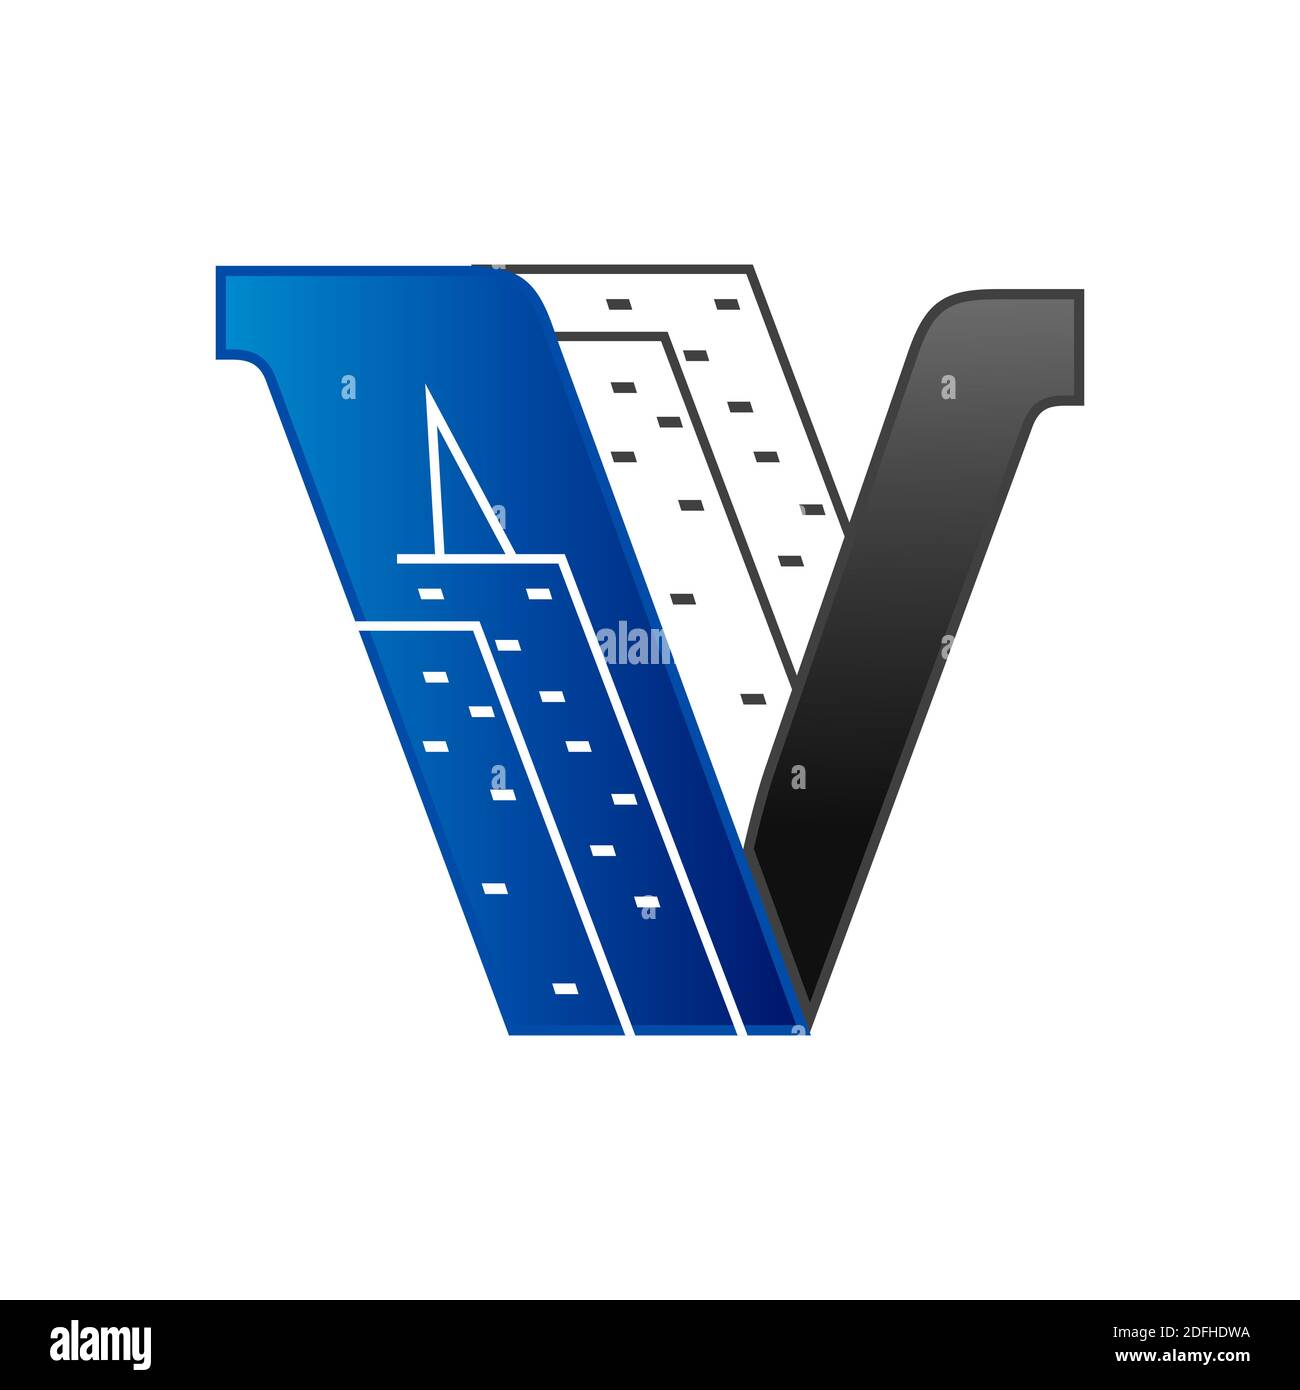 Architektur Konzept Buchstabe V Logo Konzept mit blau orangefarbenem Element Symbol und Vorlage Stock Vektor